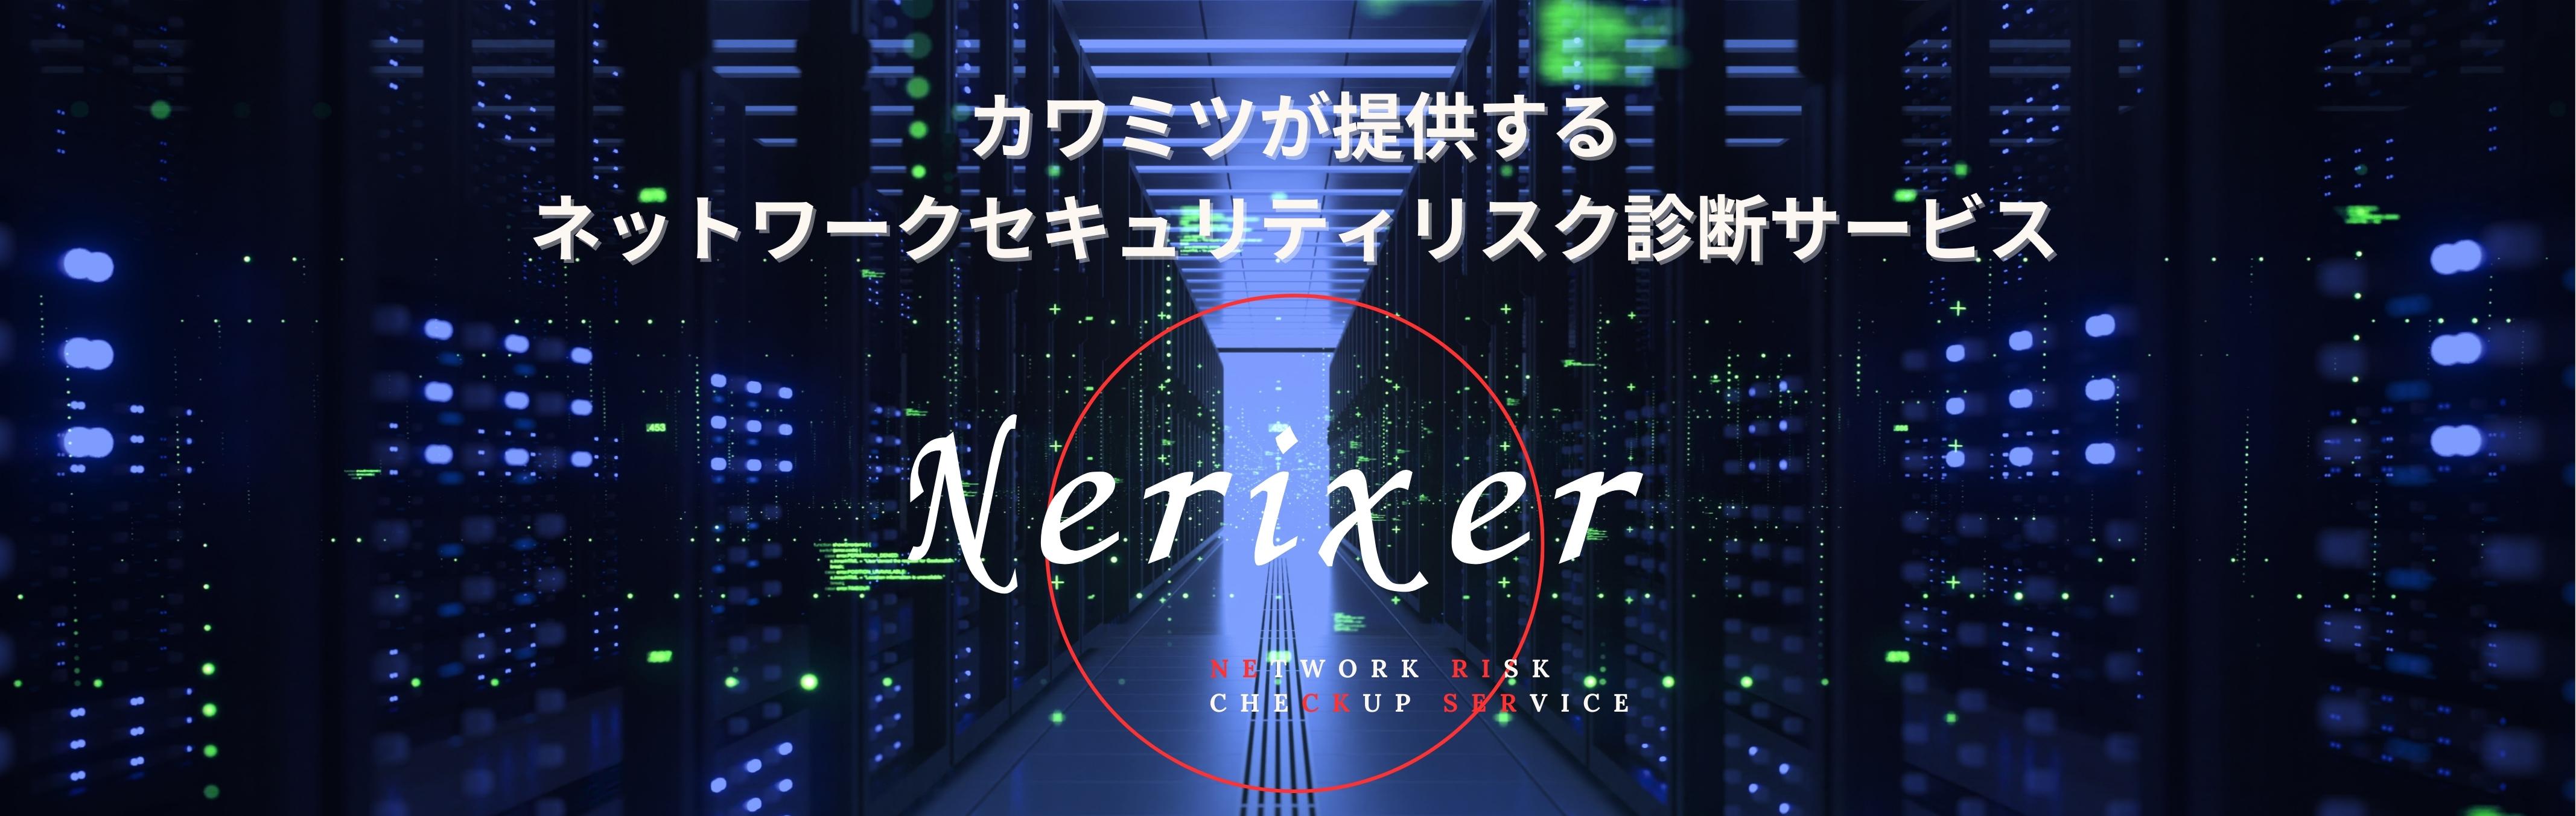 slide_nerixer02.jpg